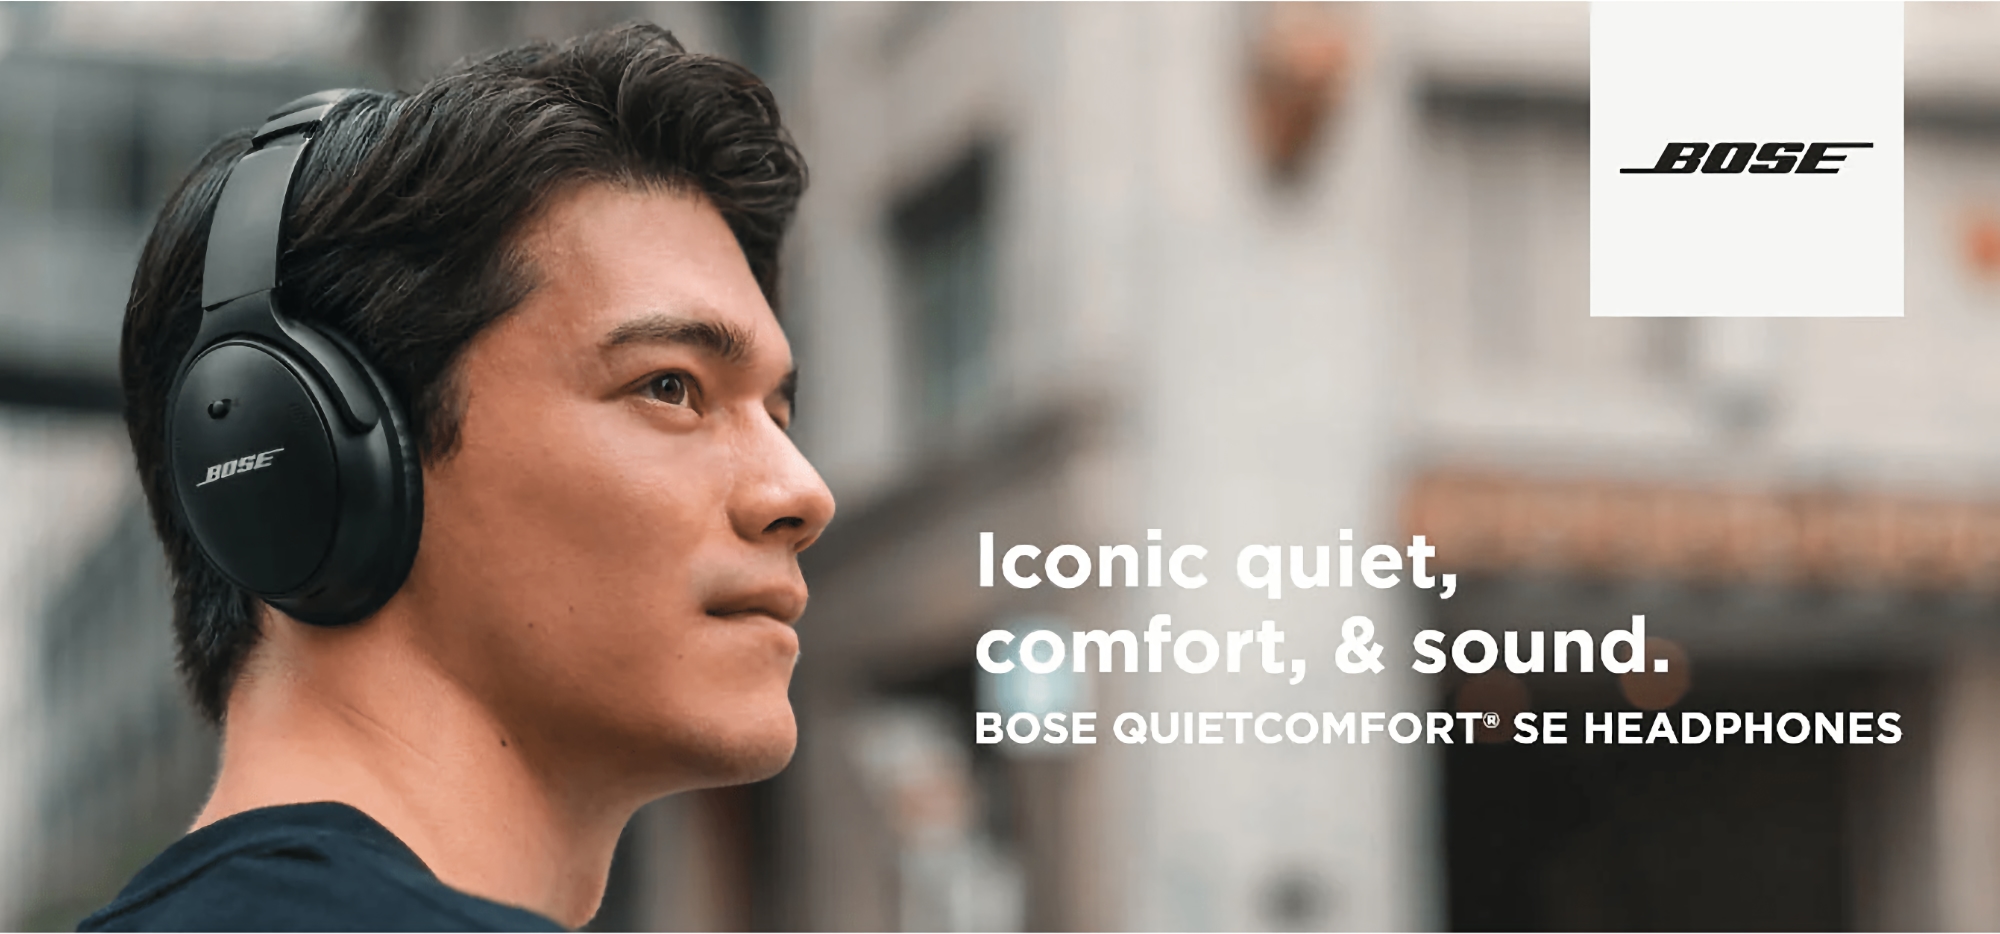 Bose QuietComfort SE op Amazon: hoofdtelefoon met ANC en tot 24 uur batterijduur met een korting van 101 euro